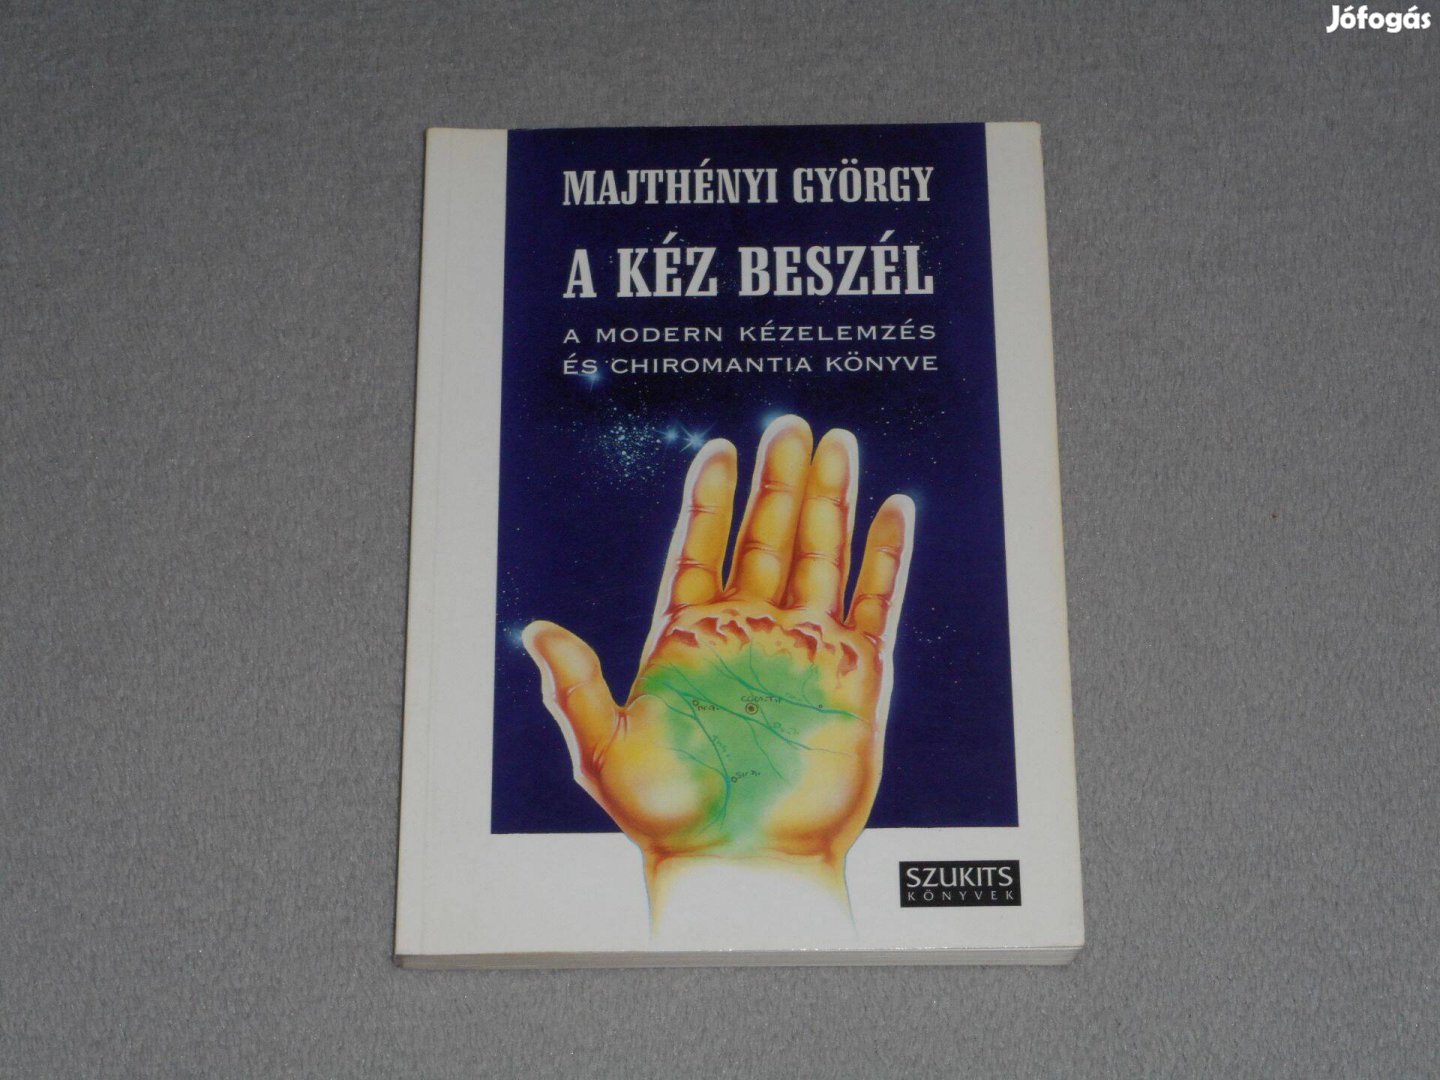 Majthényi György - A kéz beszél - A modern kézelemzés és chiromantia